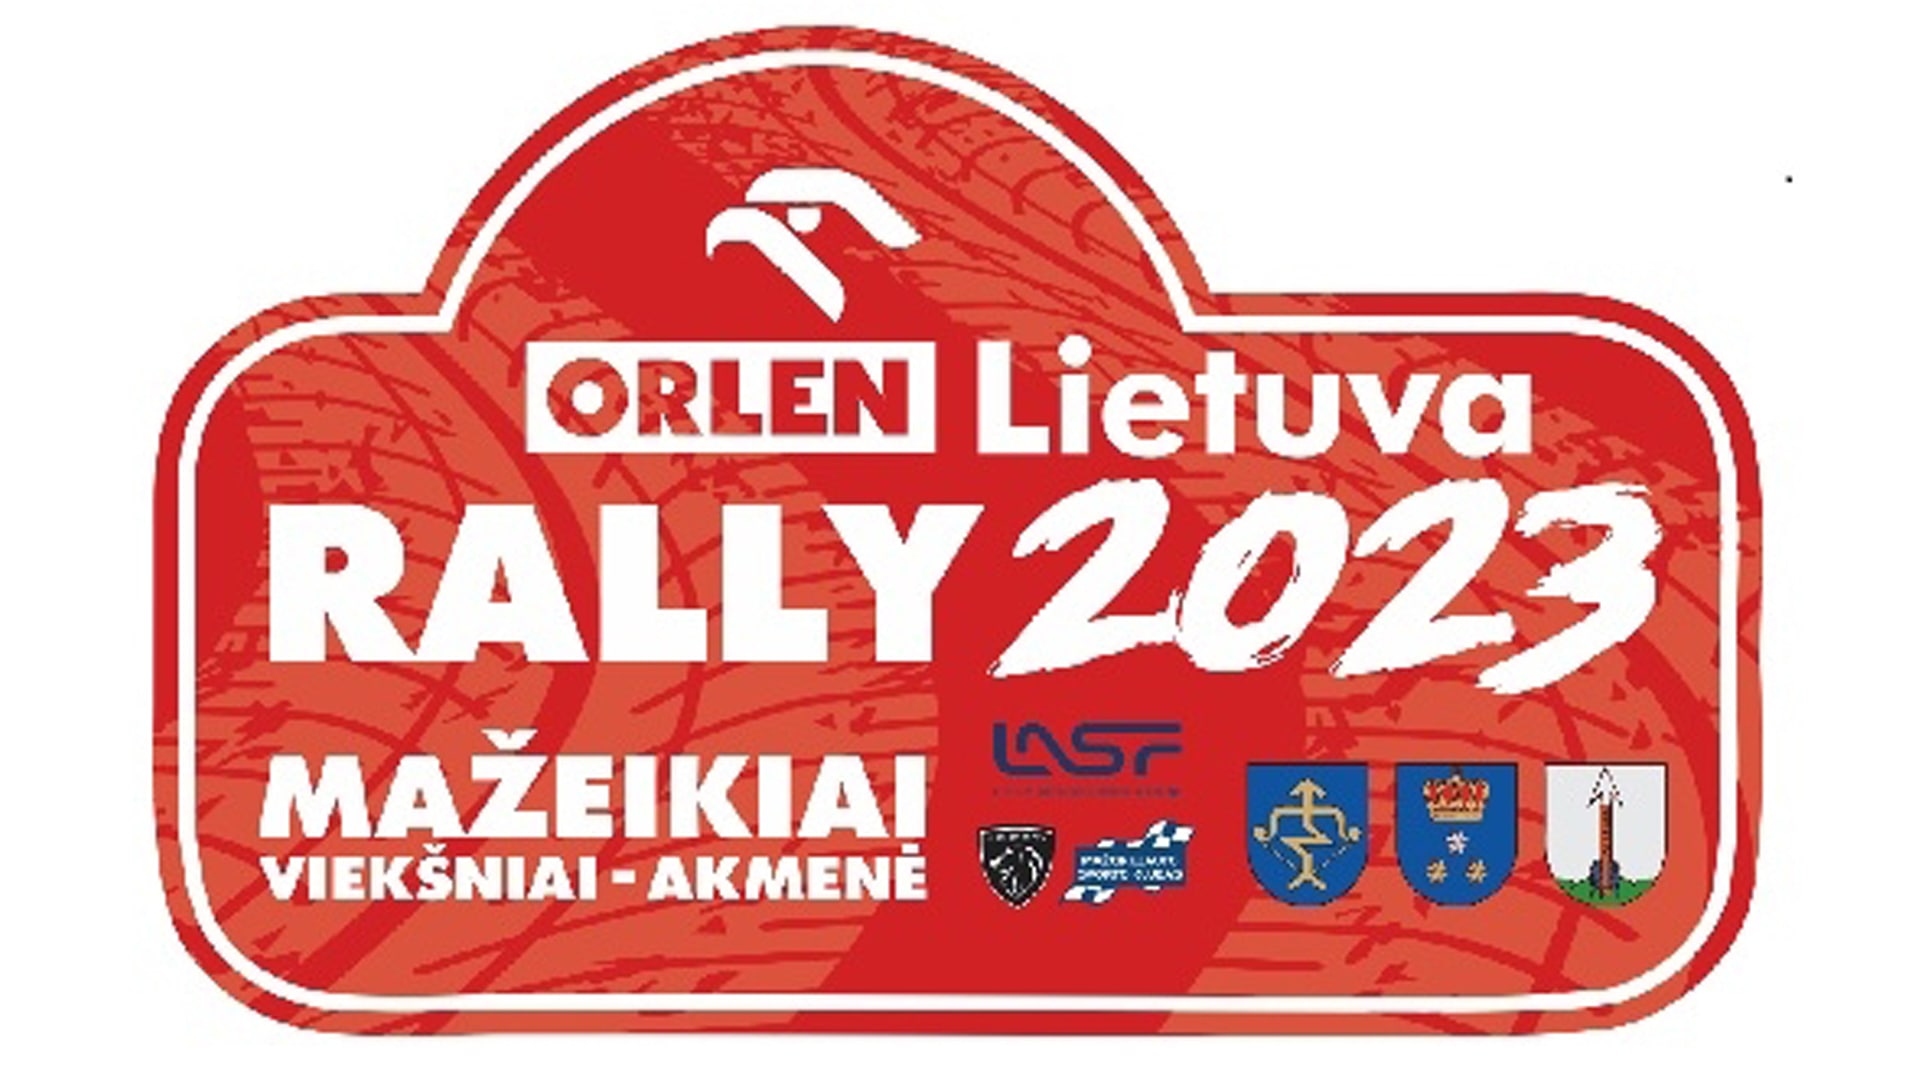 Orlen Lietuva Rally 2023